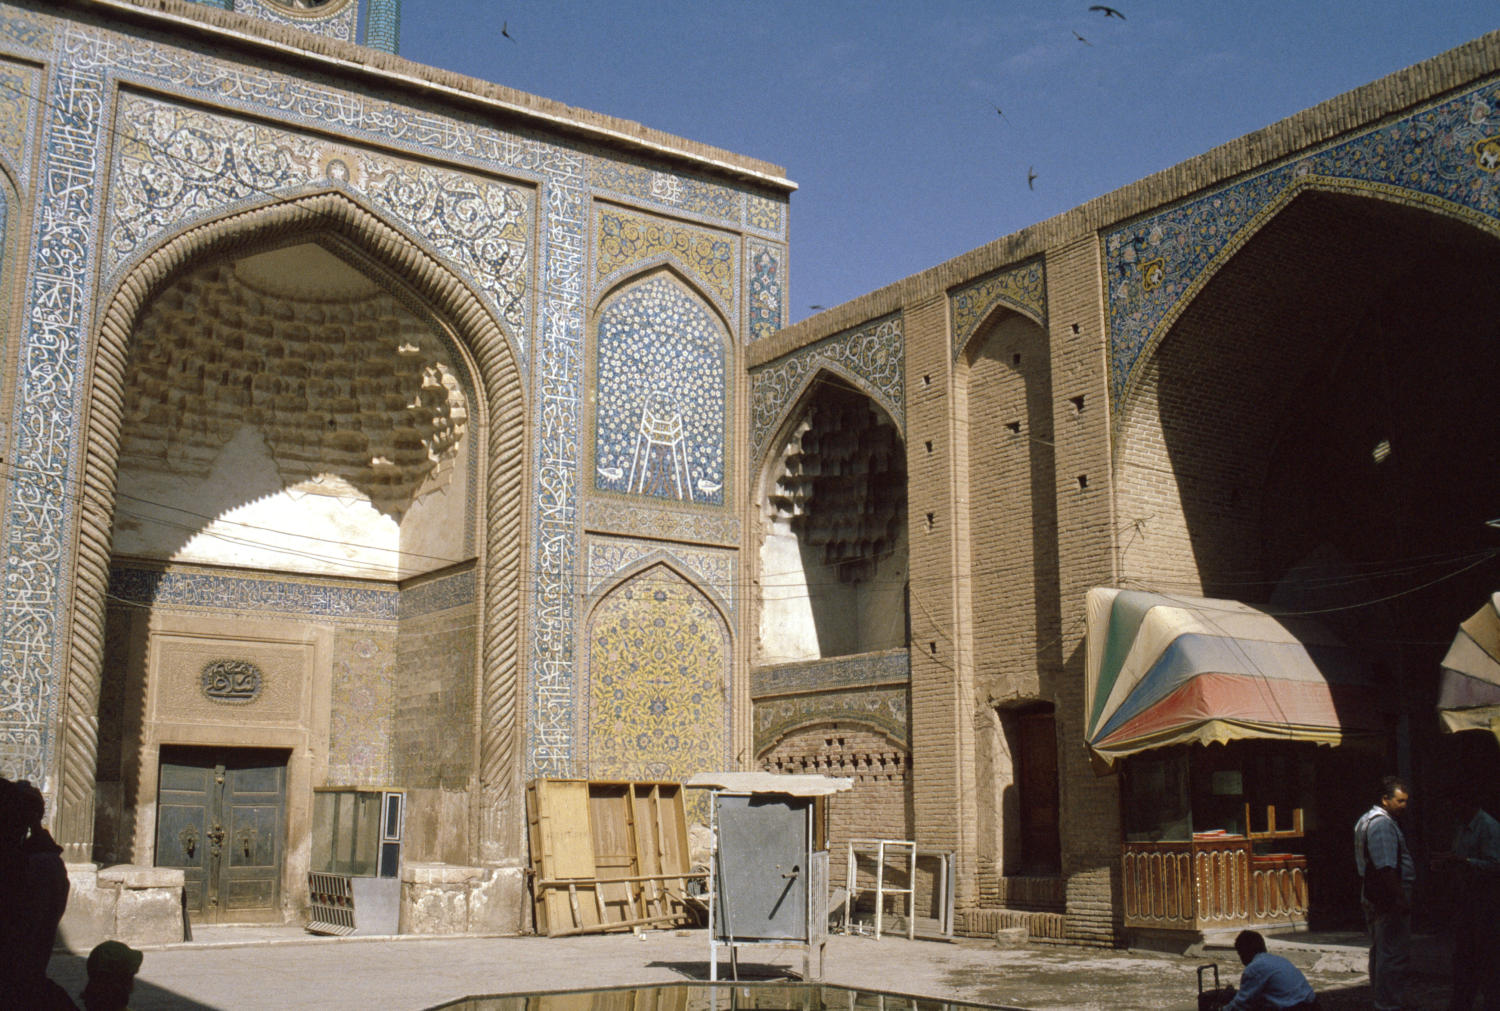 Madrasa portal along bazaar.